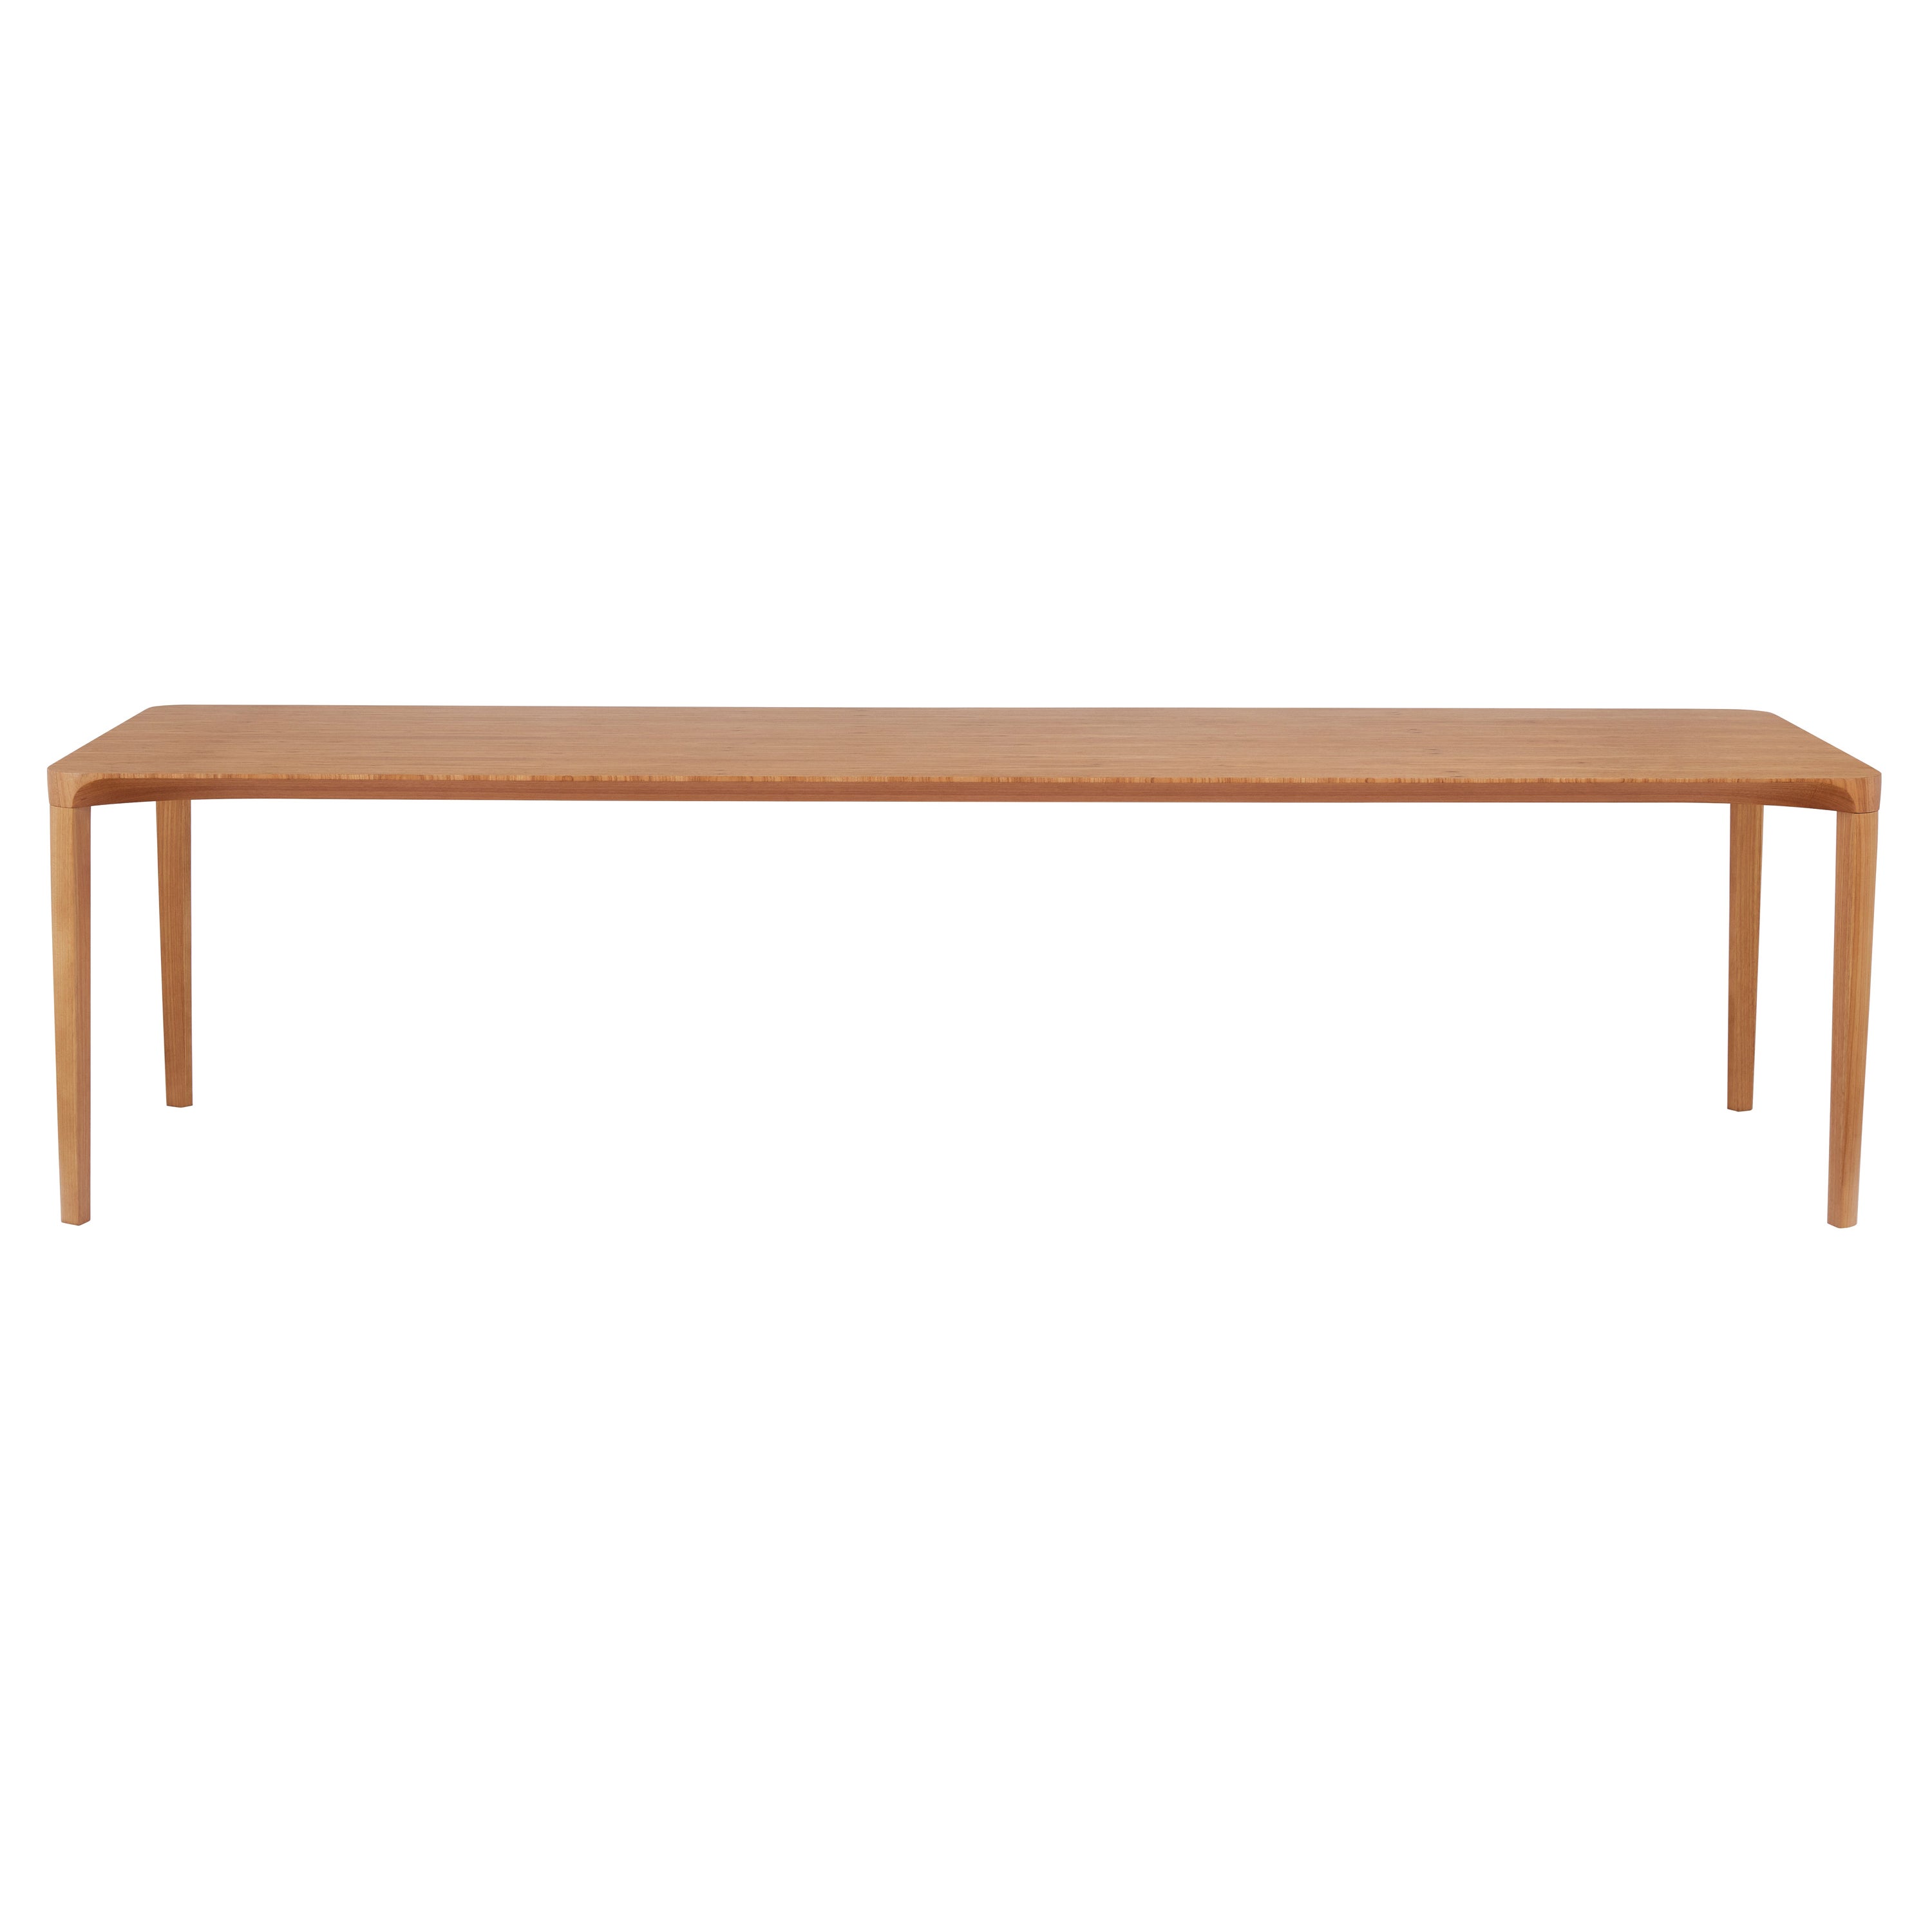 Table de salle à manger de style minimaliste, en bois massif naturel renforcé d'acier